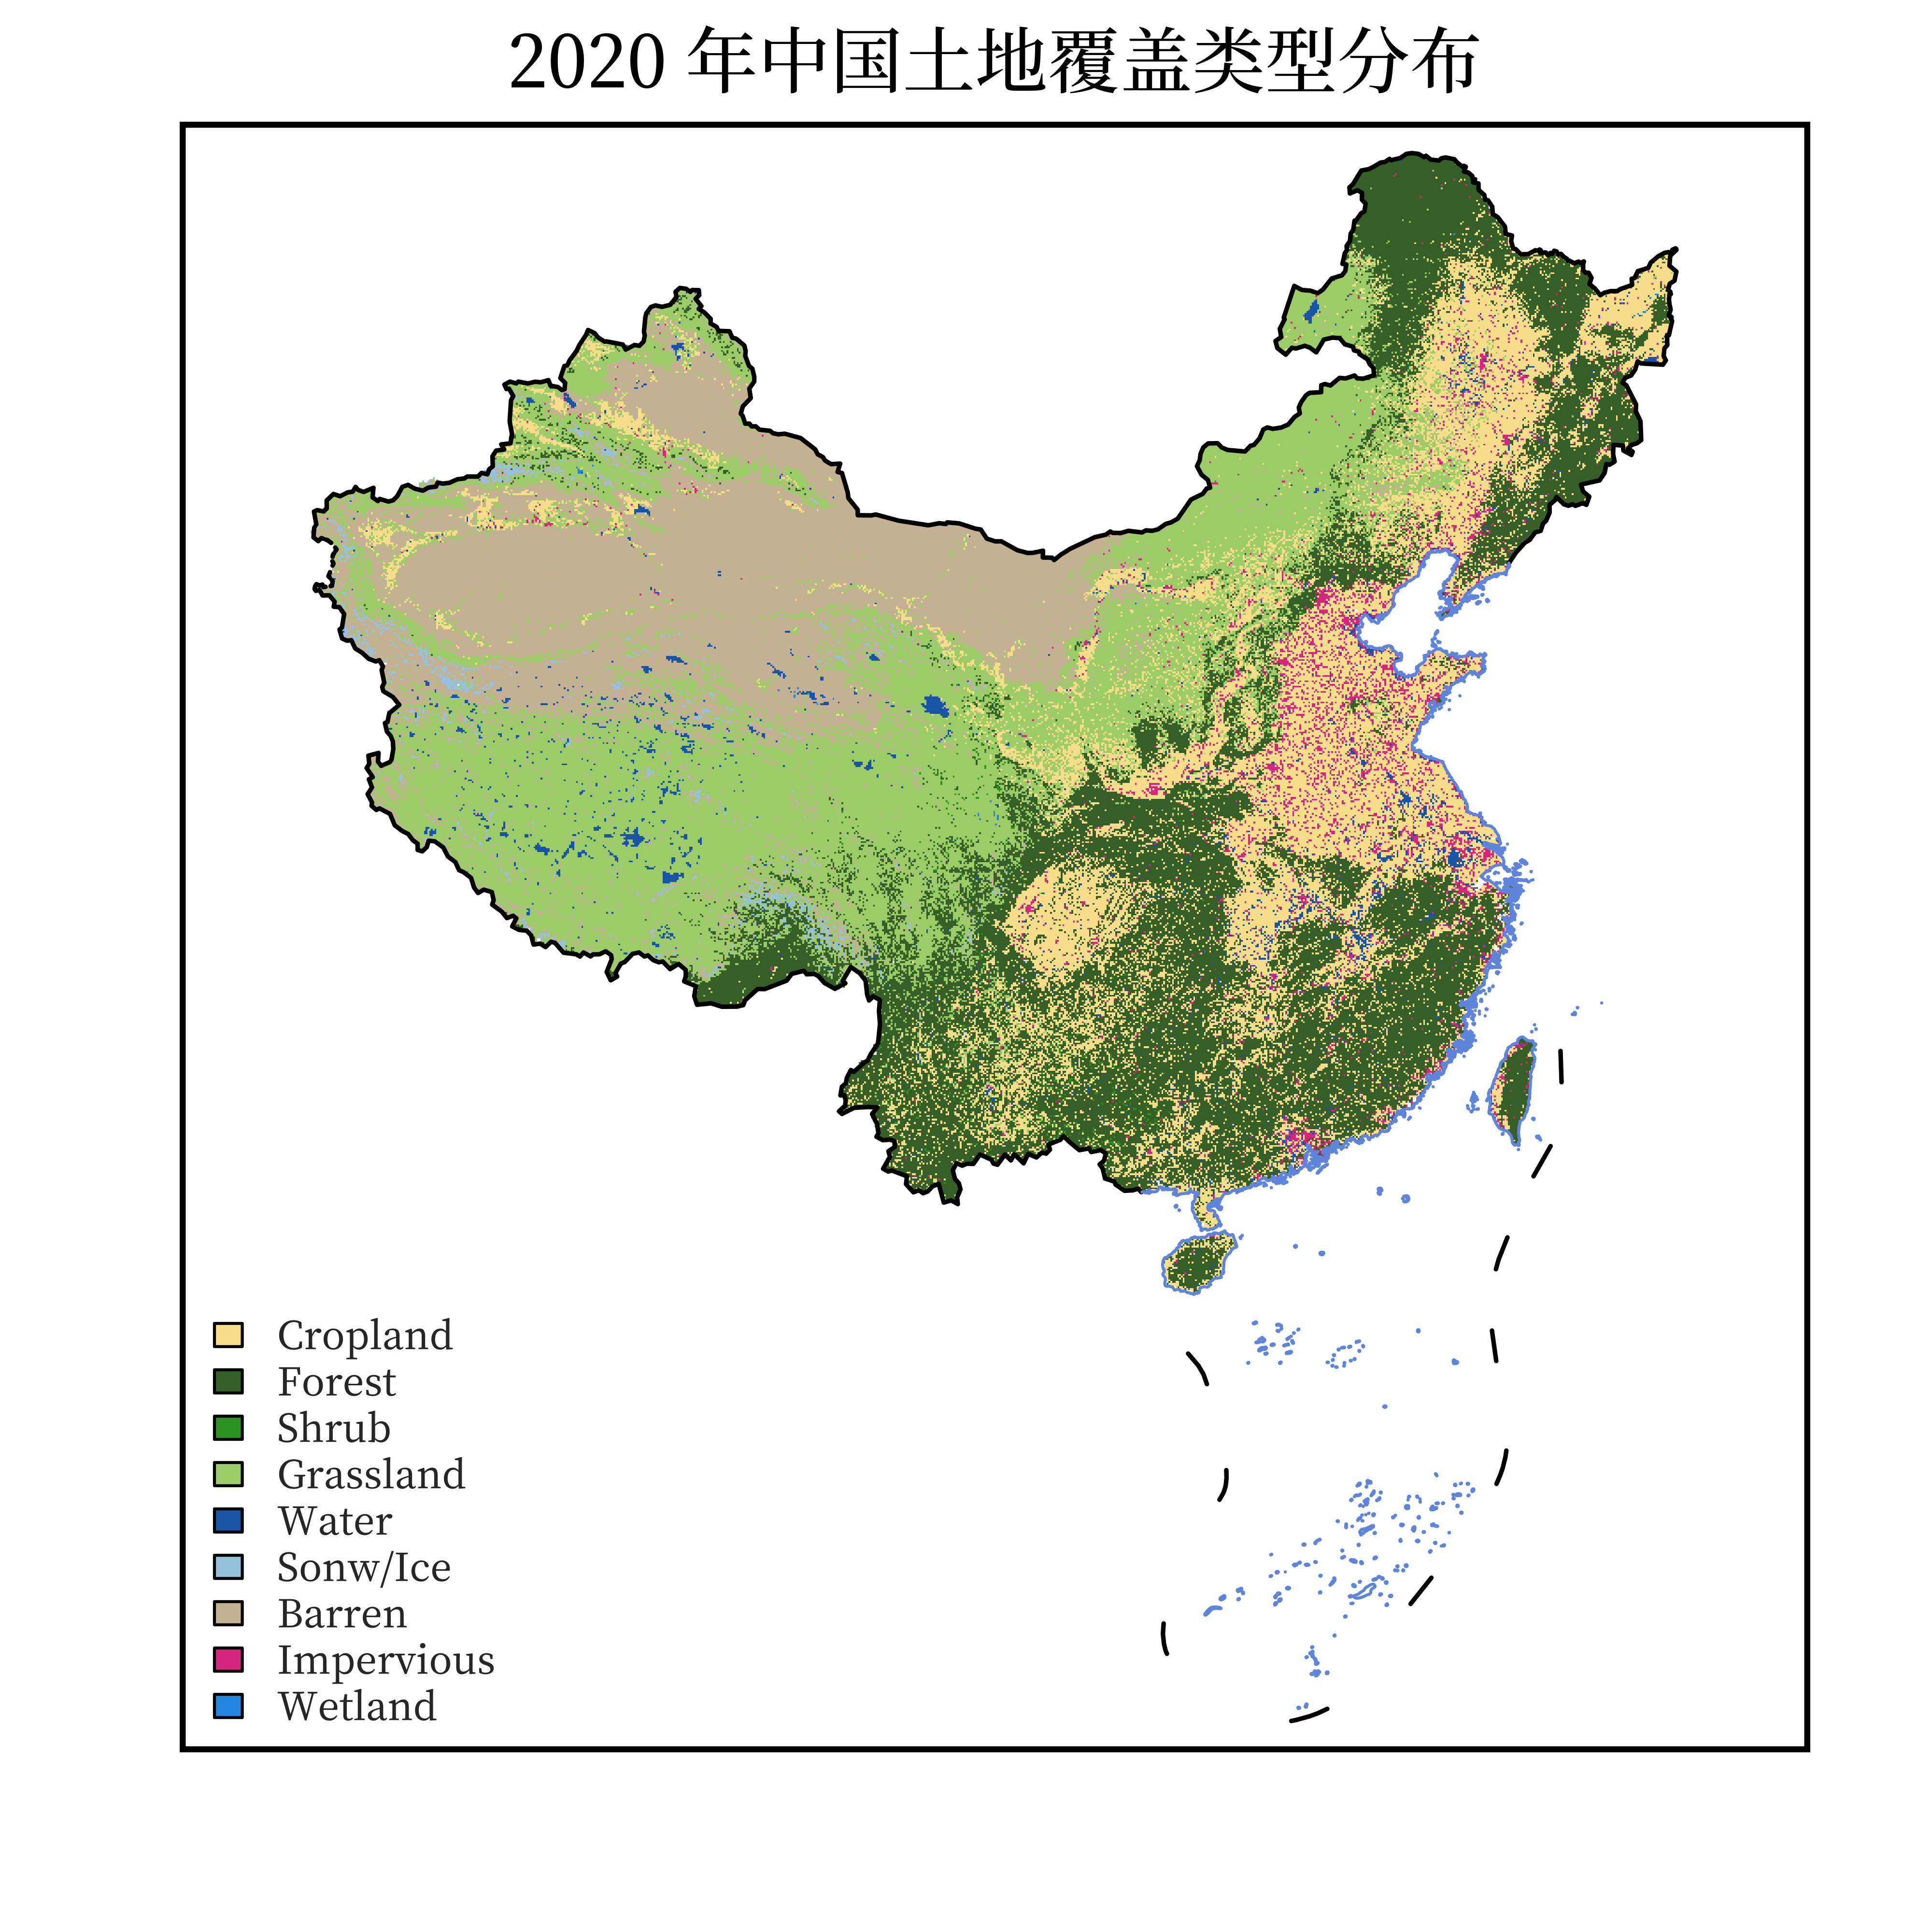 2020 年中国土地覆盖类型分布